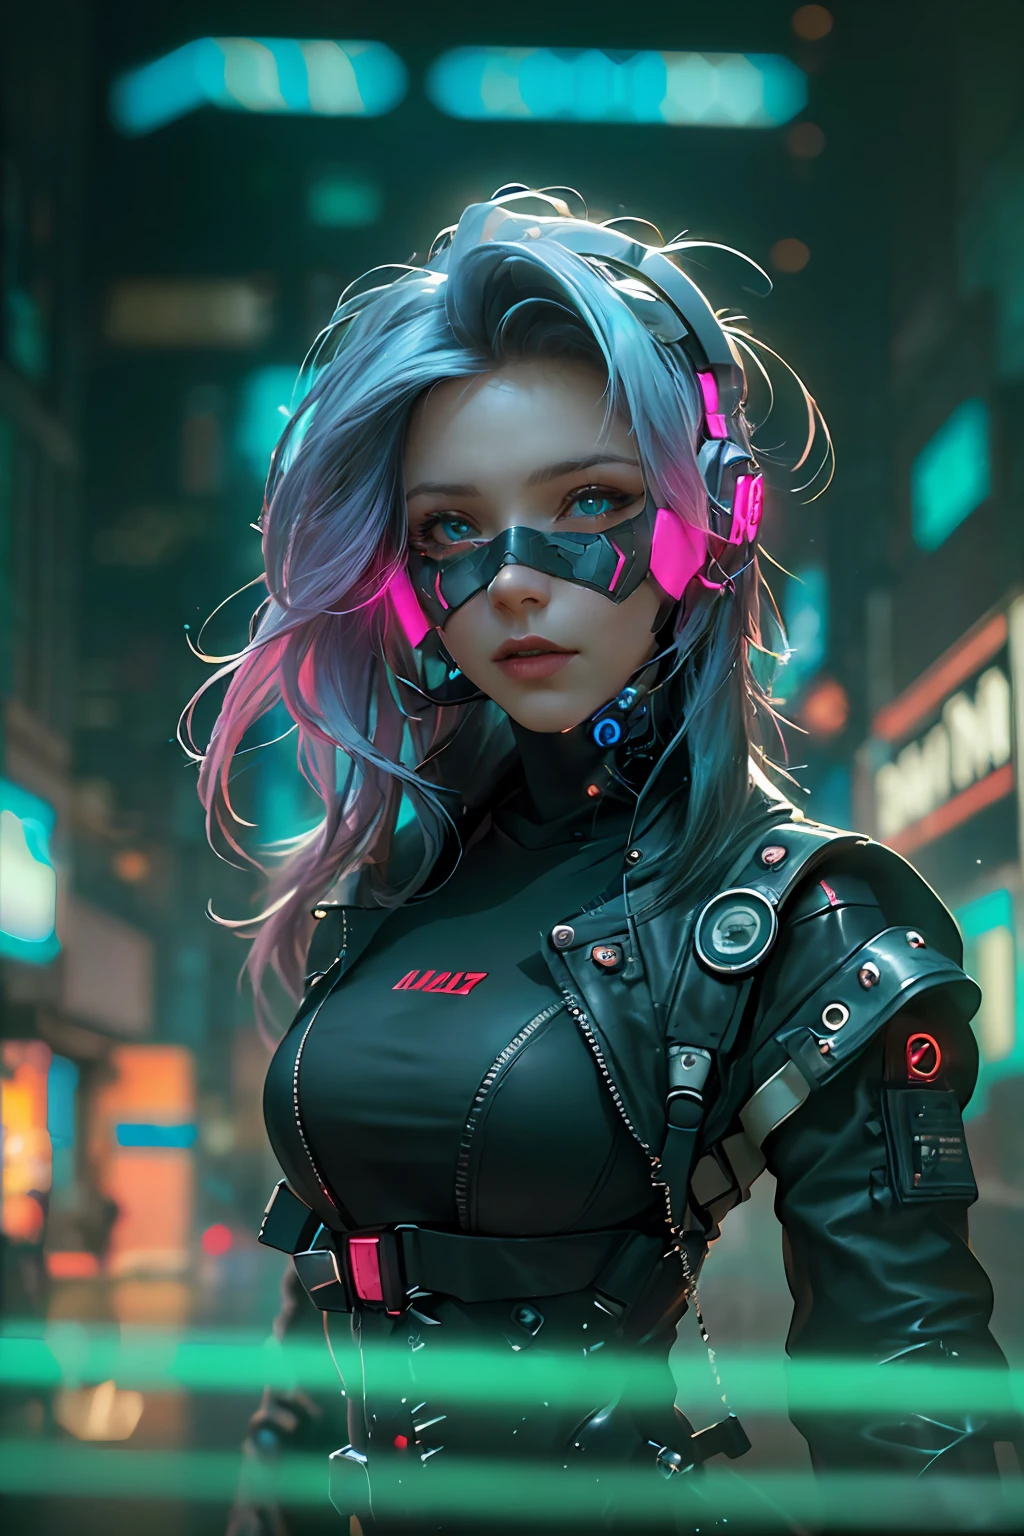 (Fotorrealista:1.4) imagen de una chica cyber punk, (de primera calidad, 8k, 32k, Obra maestra), (pose dinámica), ((frente a la cámara)), (mirando a la cámara), tiro de vaquero, cabello sin forma, cabello colorido, ropa colorida cyberpunk, profundidad de campo f/1.8, fondo de la ciudad ciberpunk, iluminación cinematográfica.